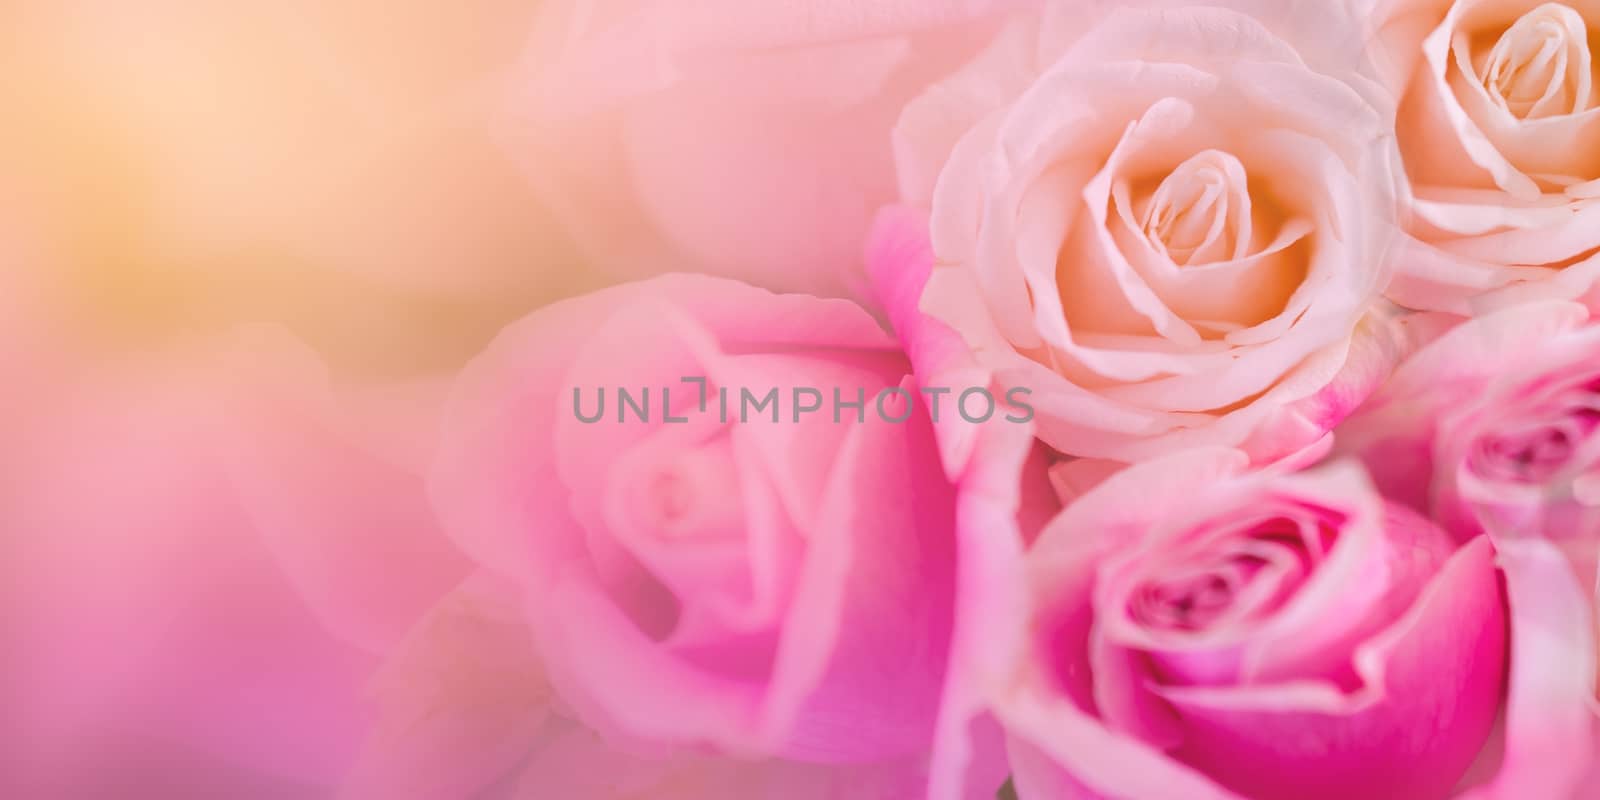 Pink roses Background blur Valentine by sarayut_thaneerat